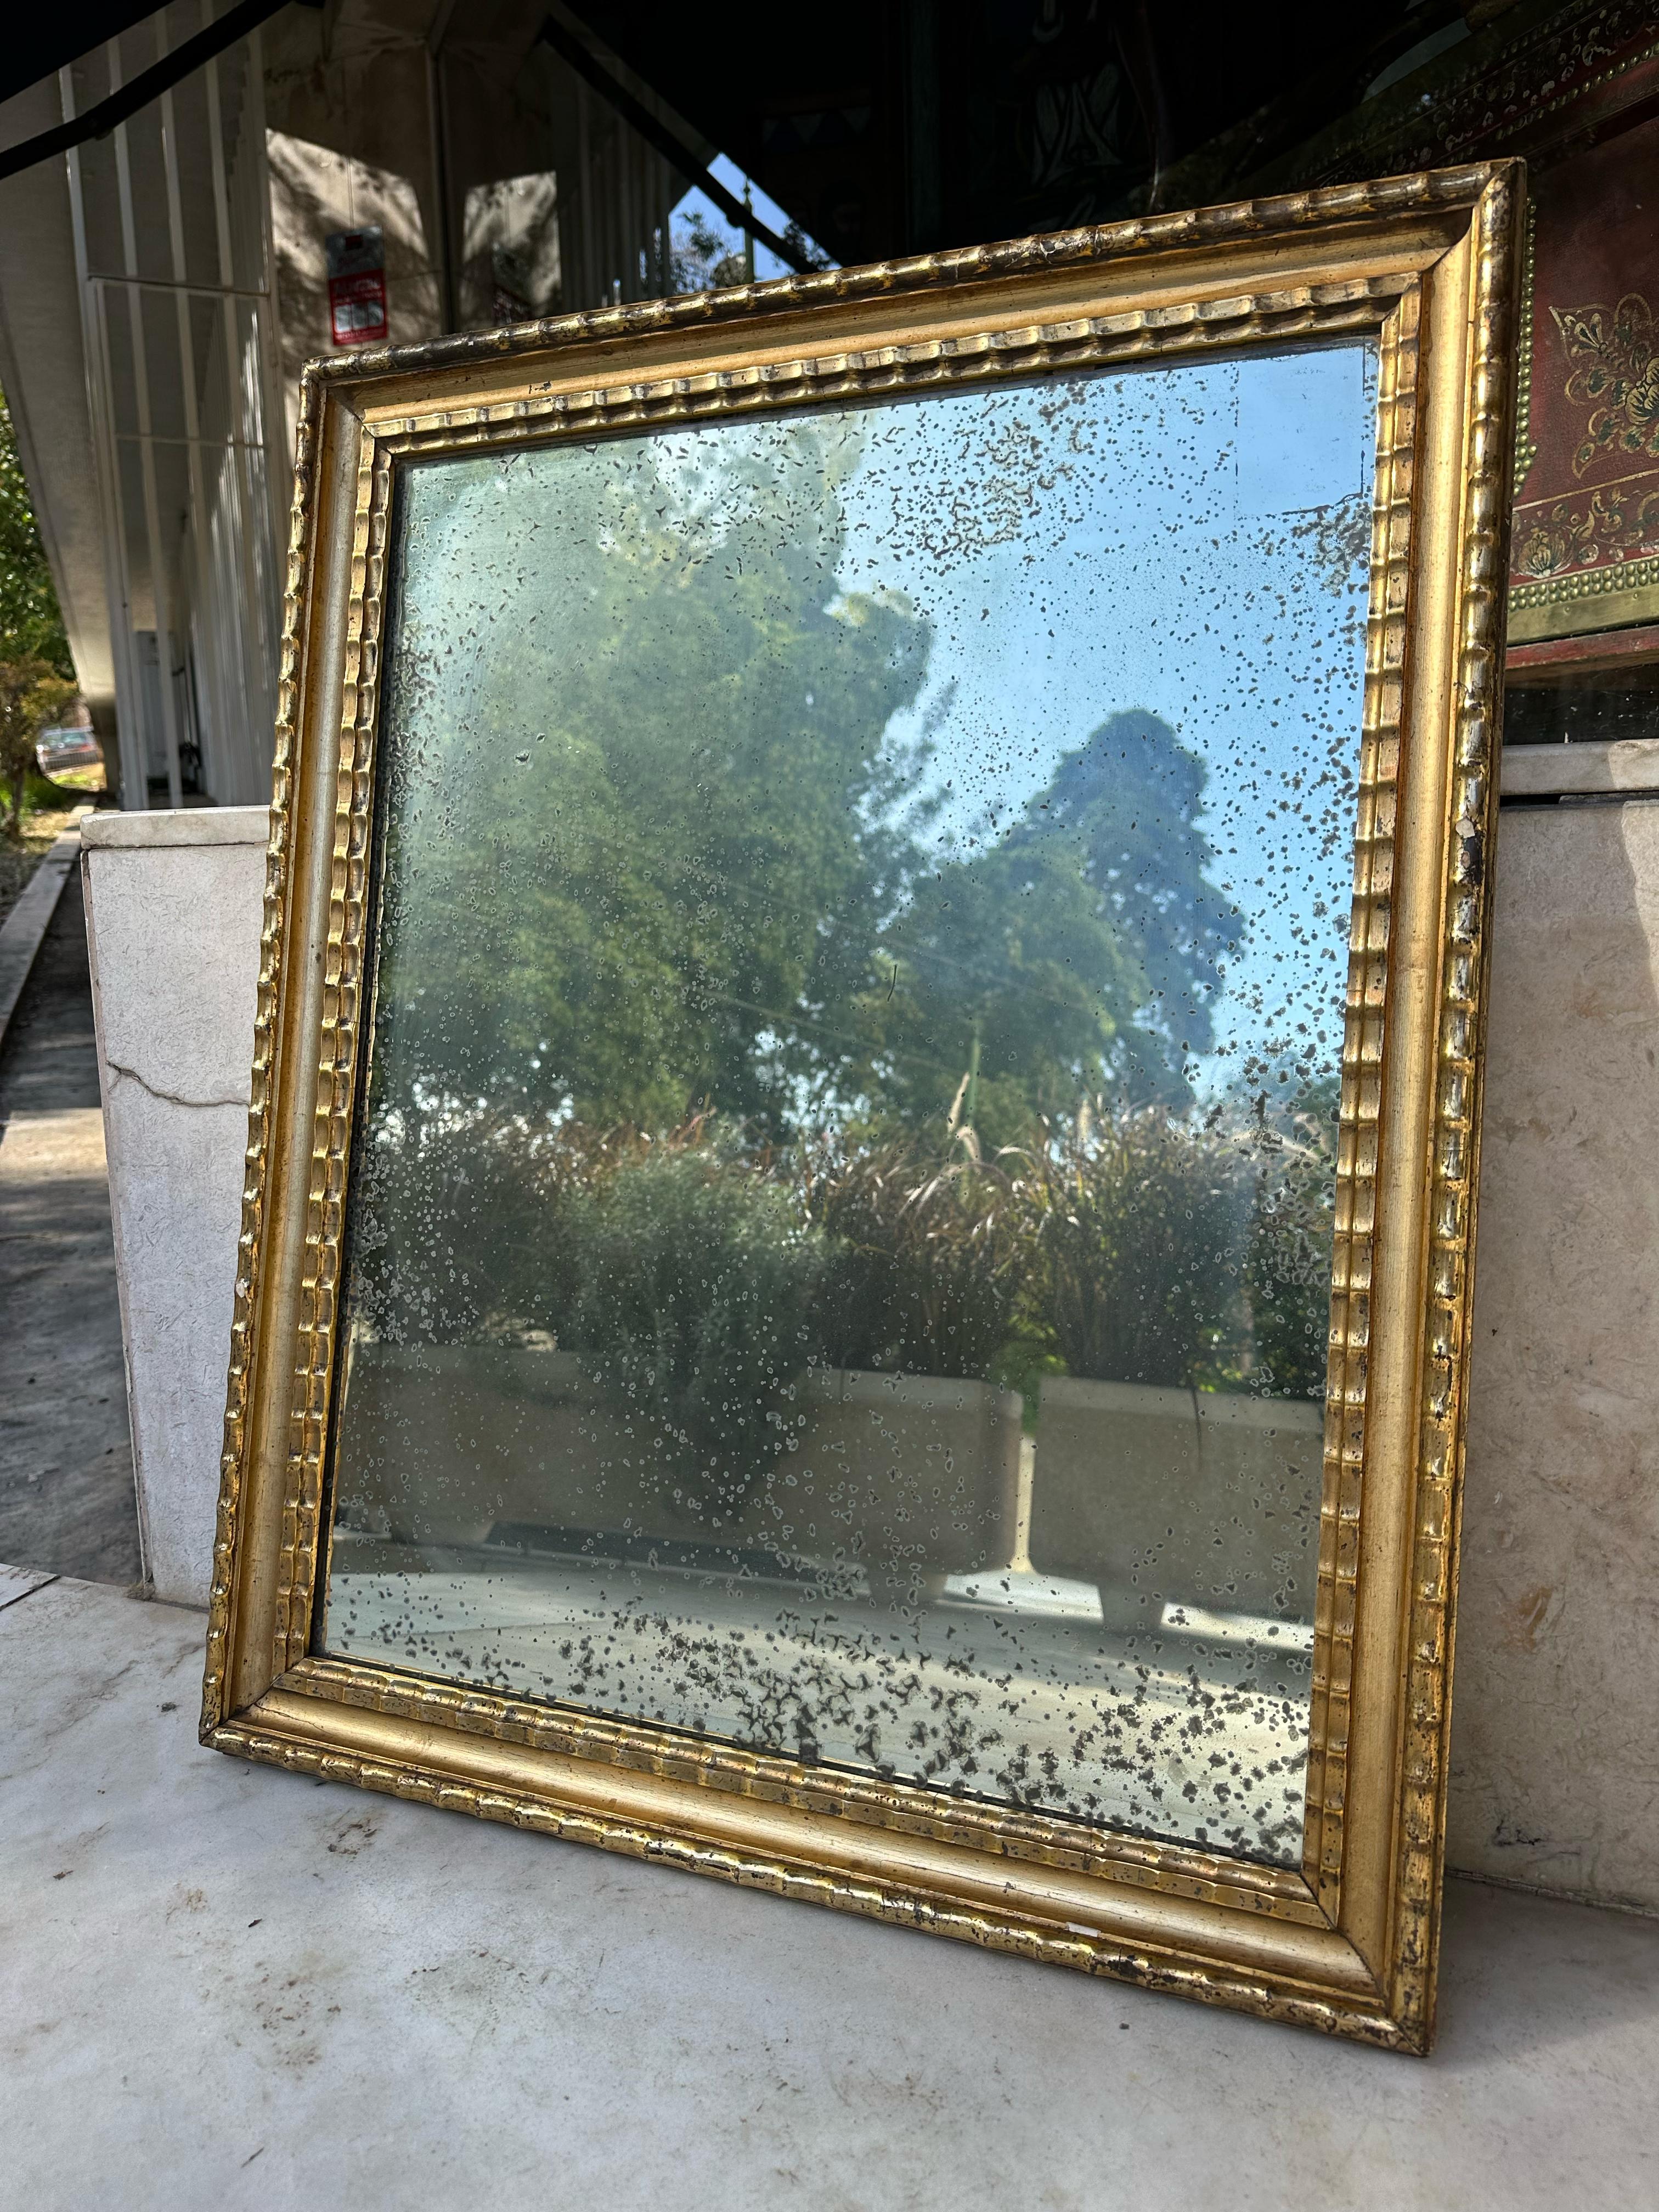 Europäischer Spiegel aus dem späten XX. Jahrhundert aus brüniertem Blattsilber

Dies ist ein exquisites Stück, das zeitlose Eleganz ausstrahlt. Der mit Präzision und Kunstfertigkeit gefertigte, kunstvoll verzierte Rahmen erinnert an die Epoche des